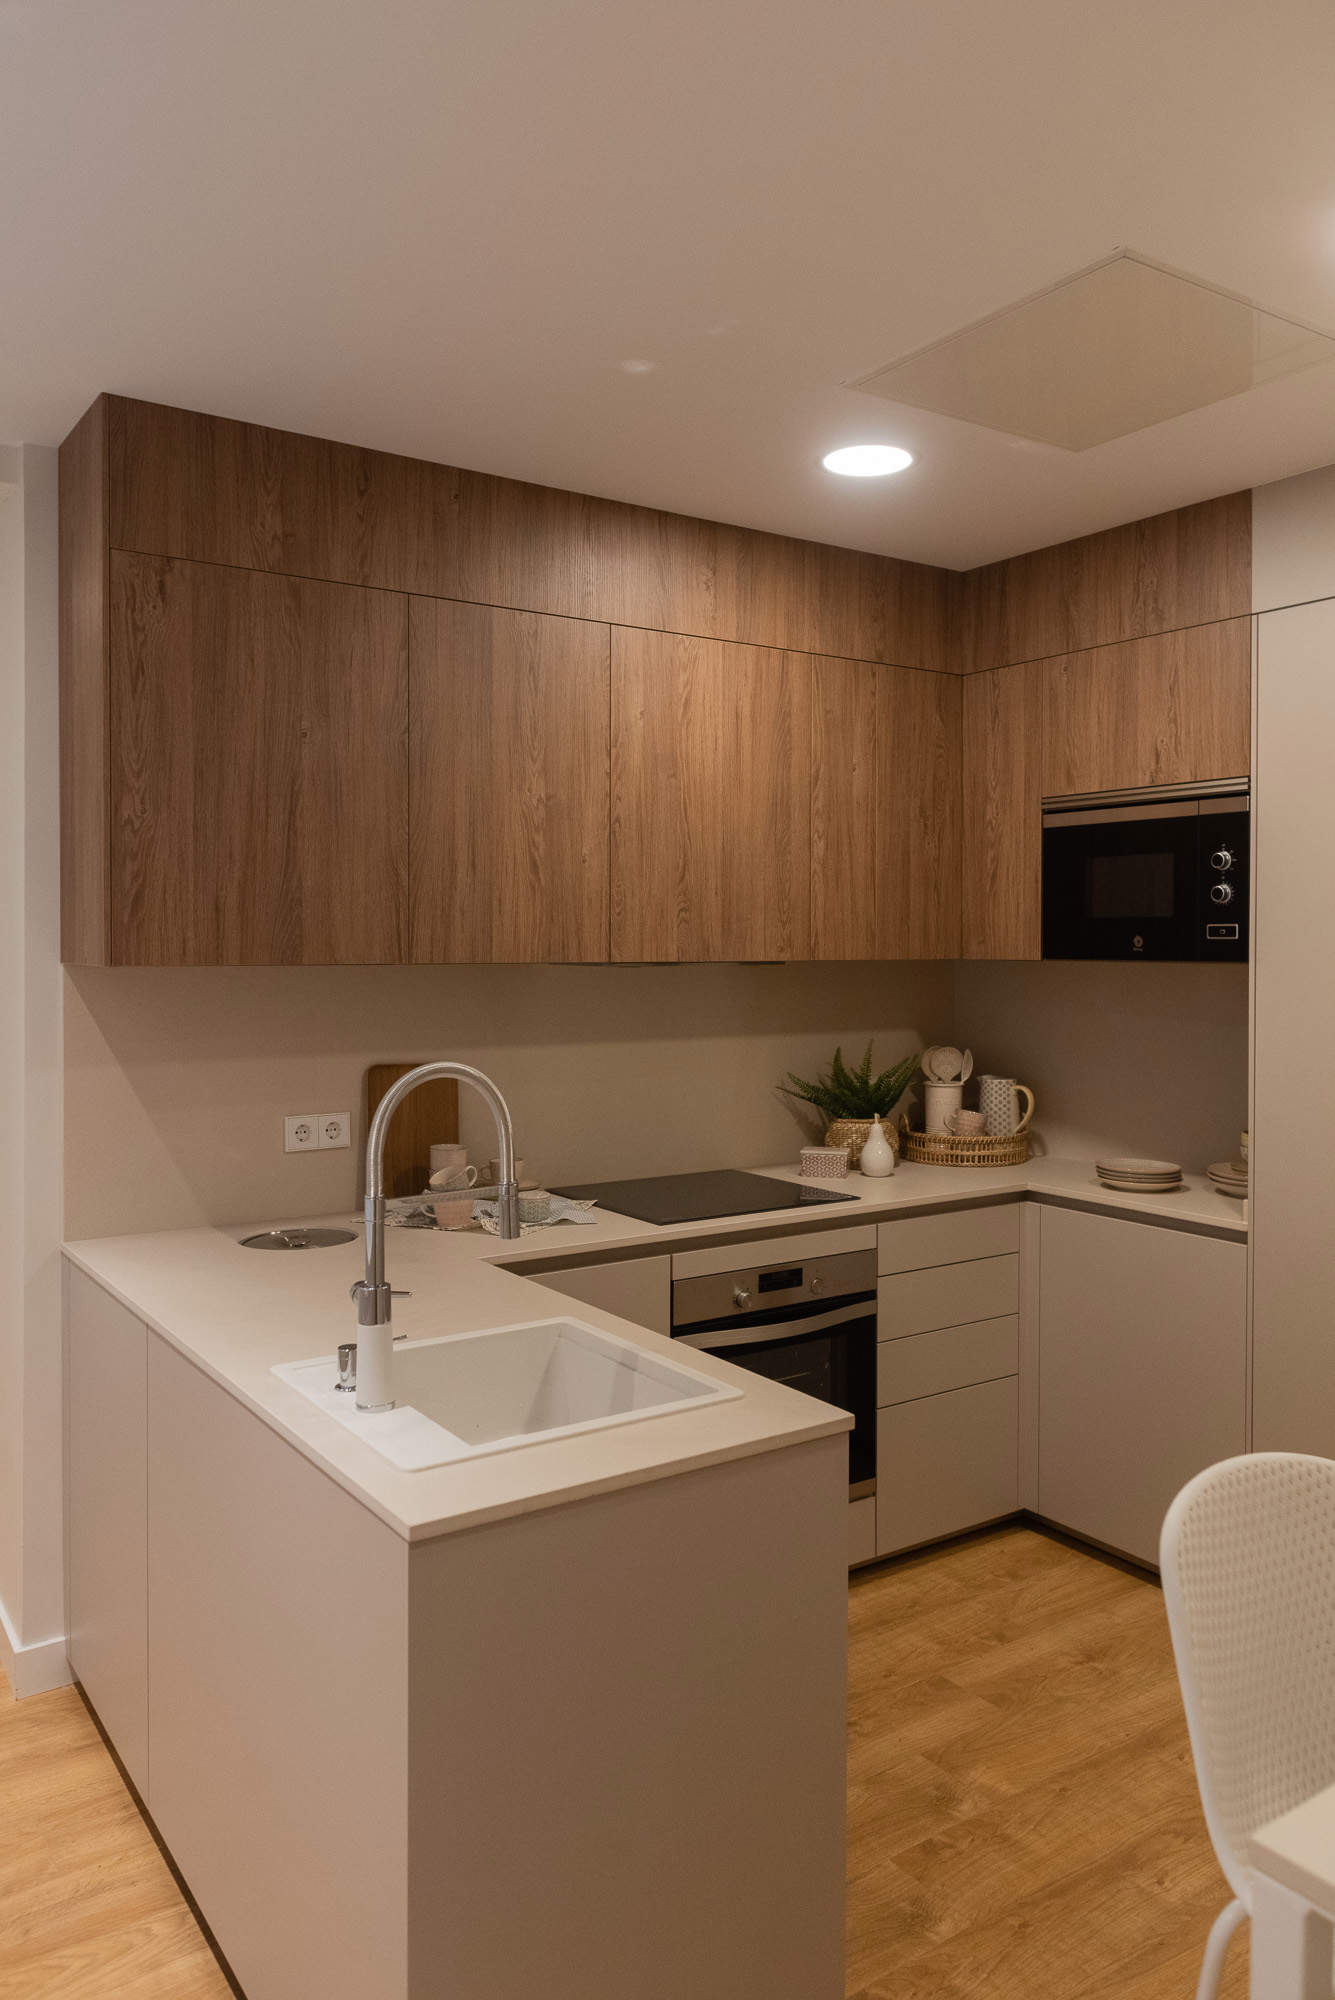 Cocina abierta con barra, muebles superiores de madera y frentes lisos por Deco Living